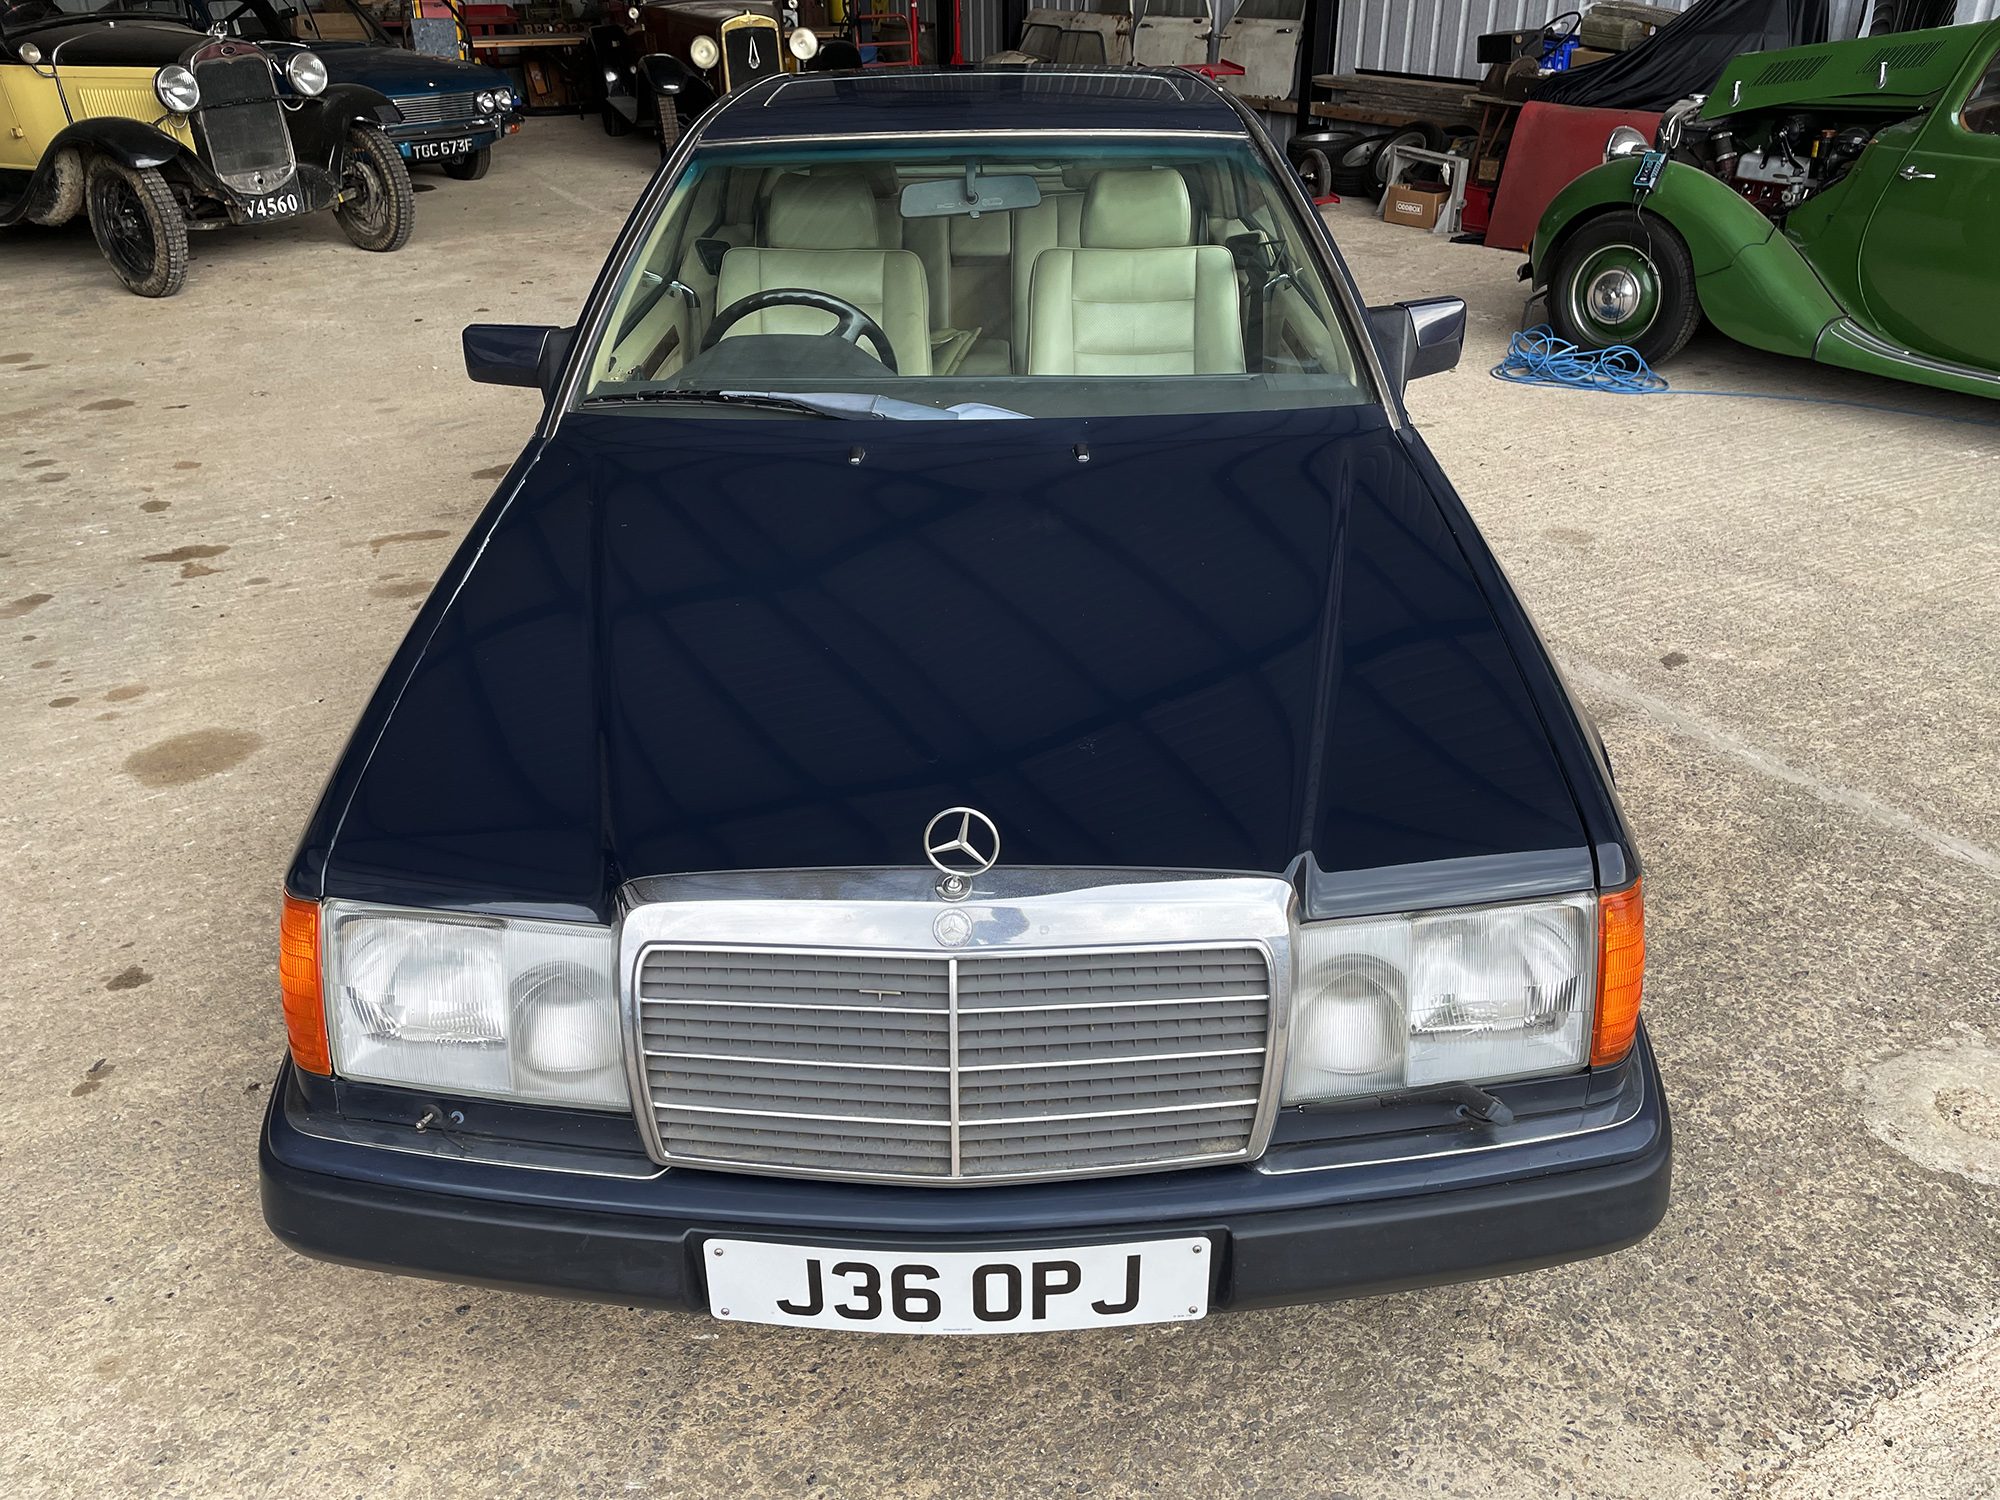 1991 Mercedes-Benz 300CE 24v Reg. no. J36 OPJ Chassis no. 1240512B562298 Engine no. M104 - Image 4 of 11